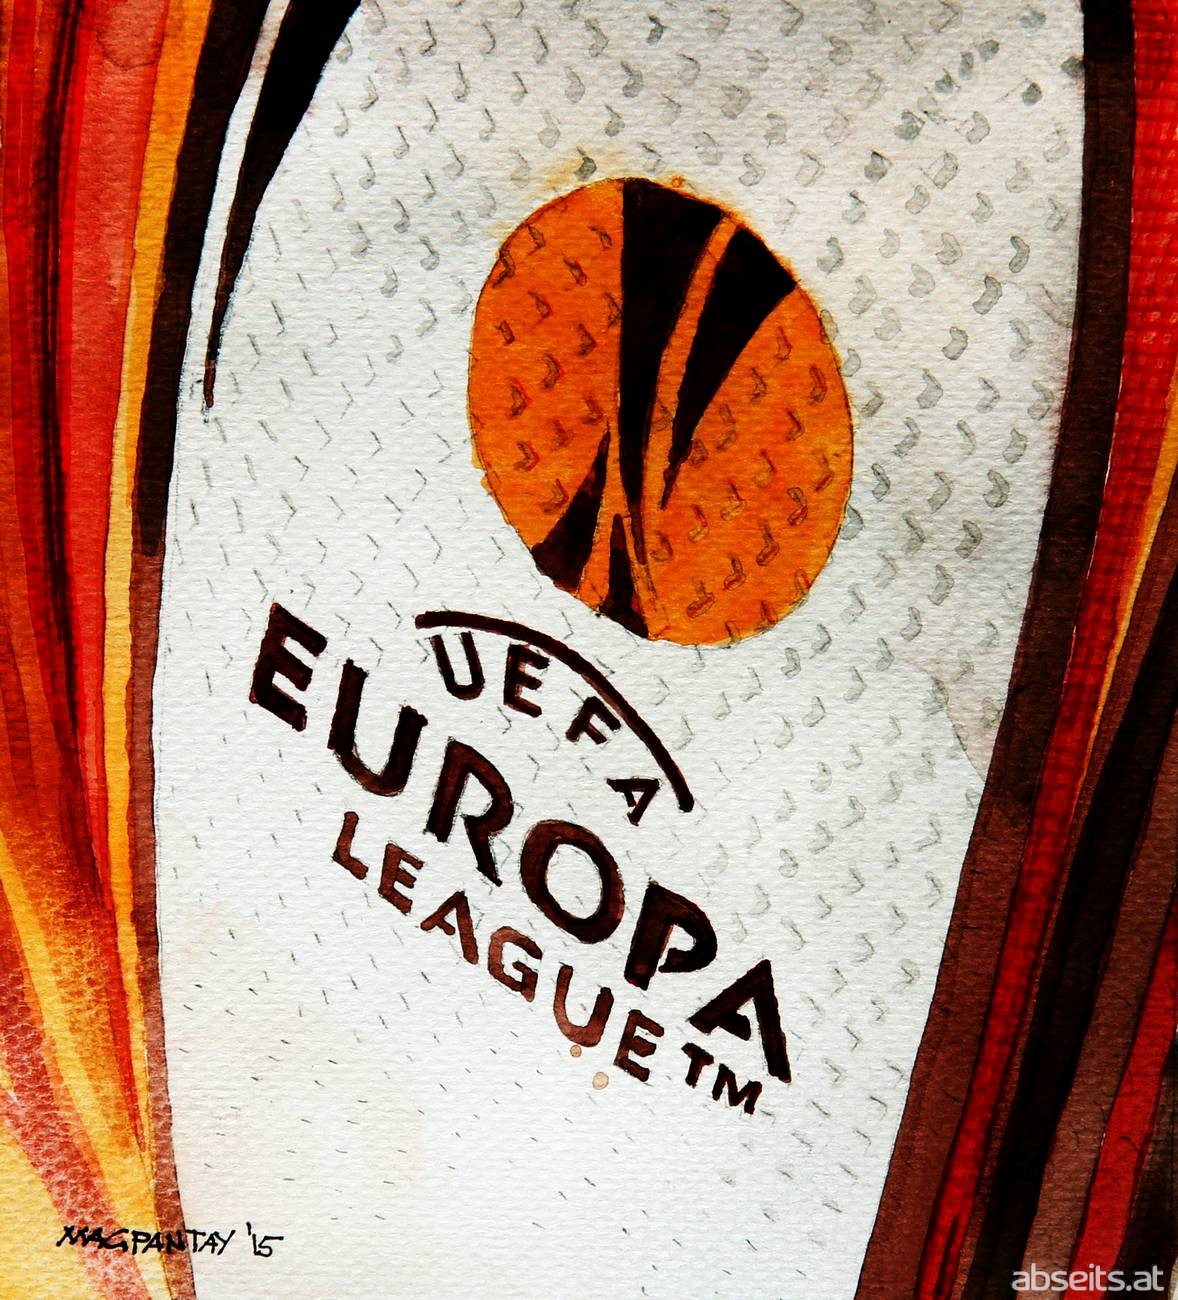 UEFA Europa League Logo_abseits.at